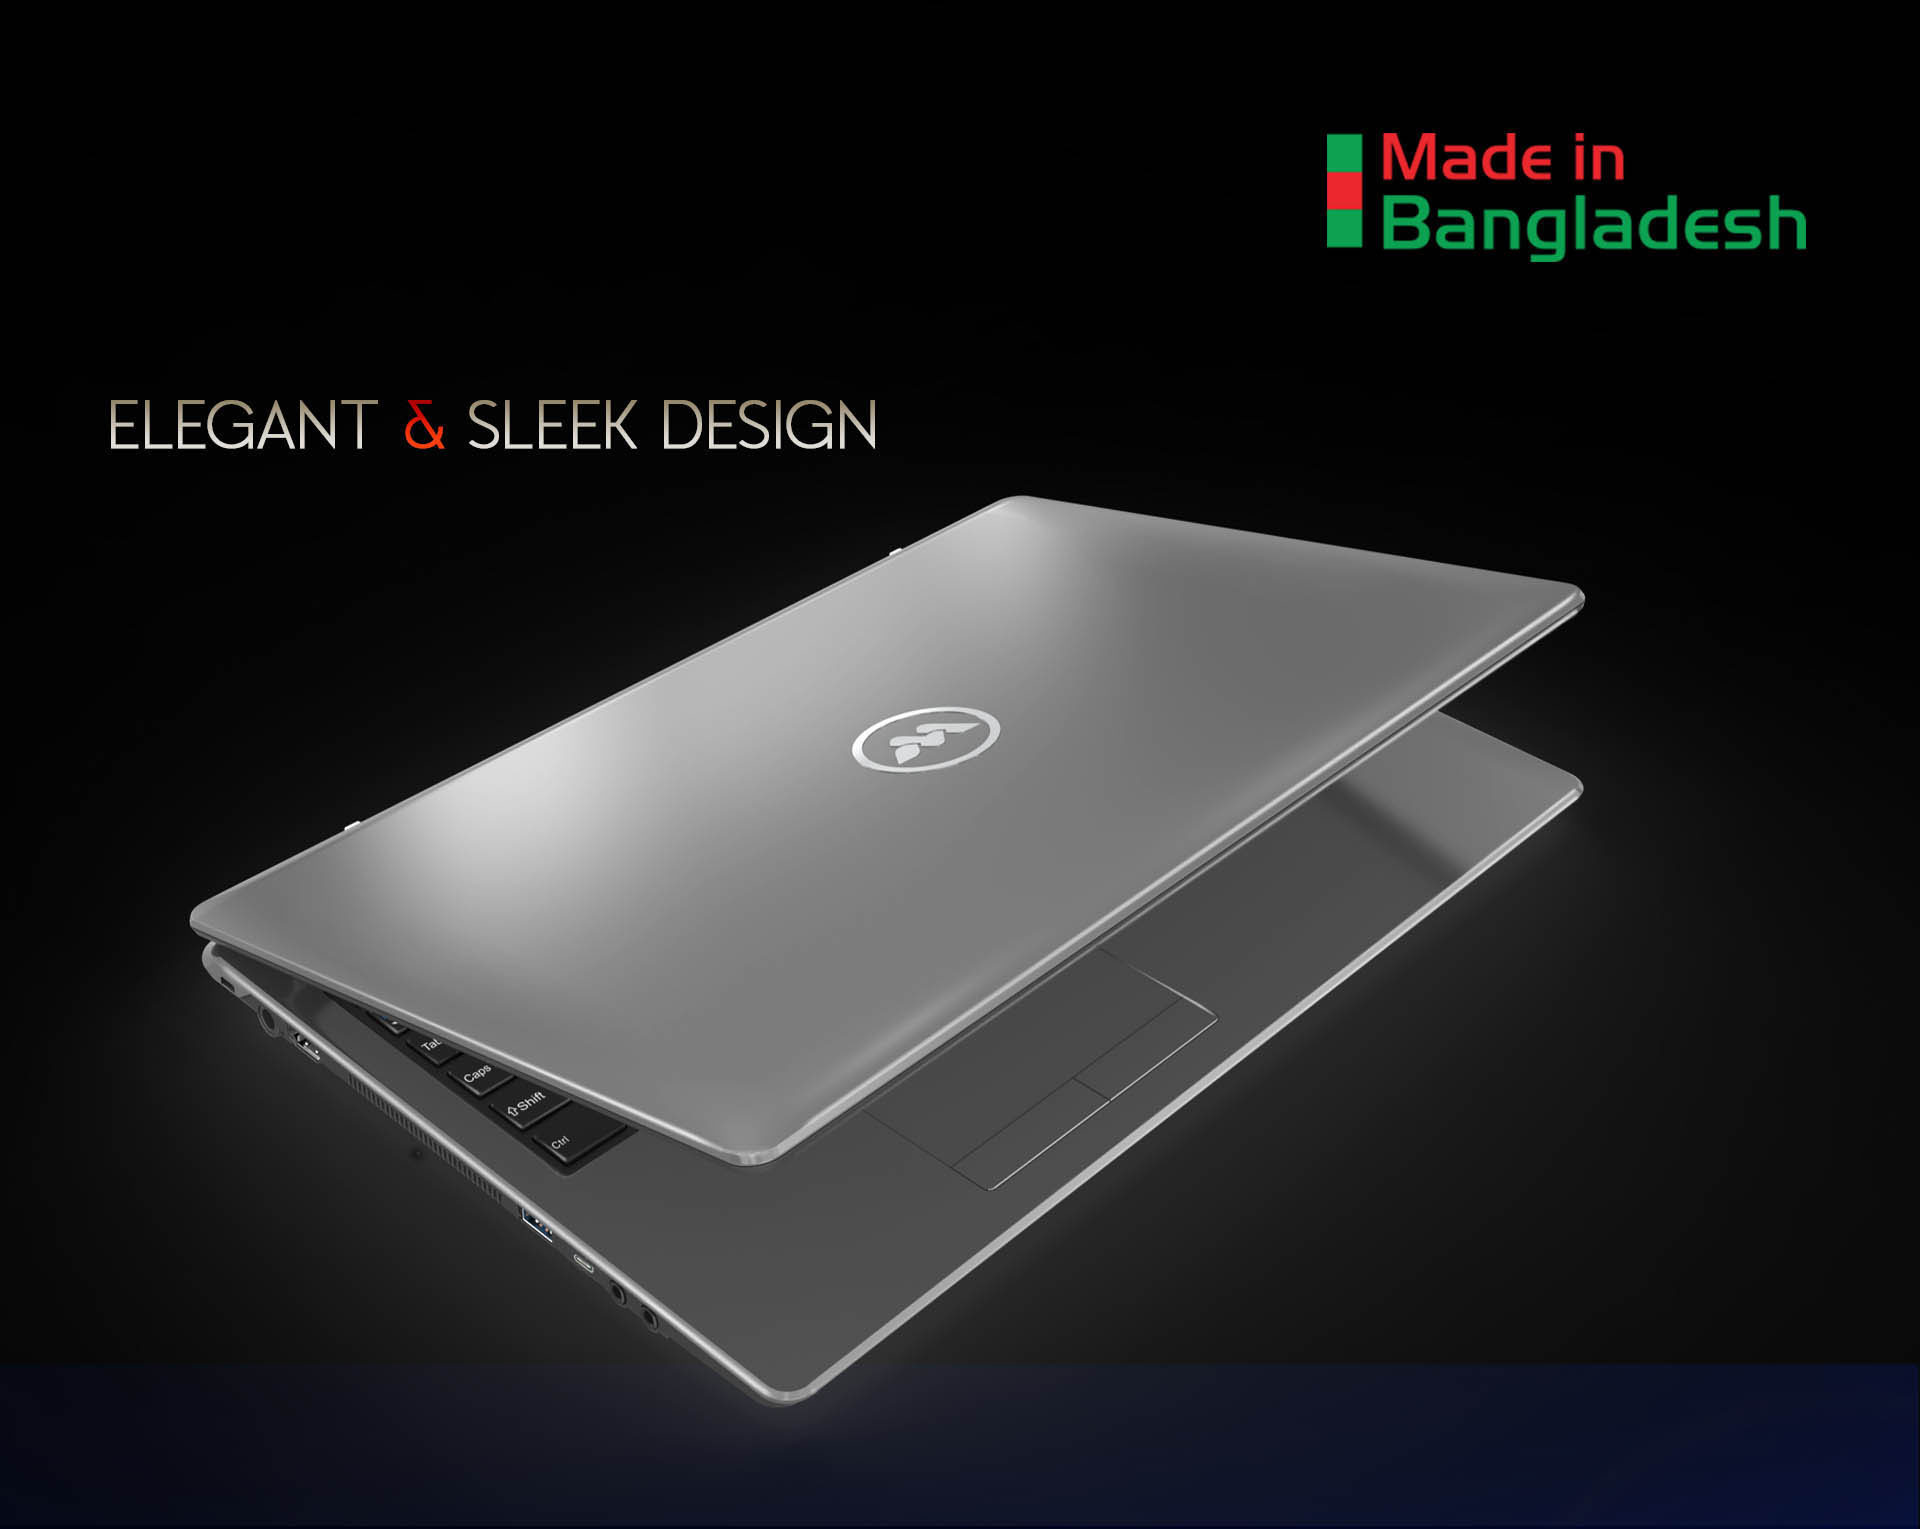  latest laptop in bangladesh 2021,best price lAPTOP  in bd, walton prelude laptop 2021